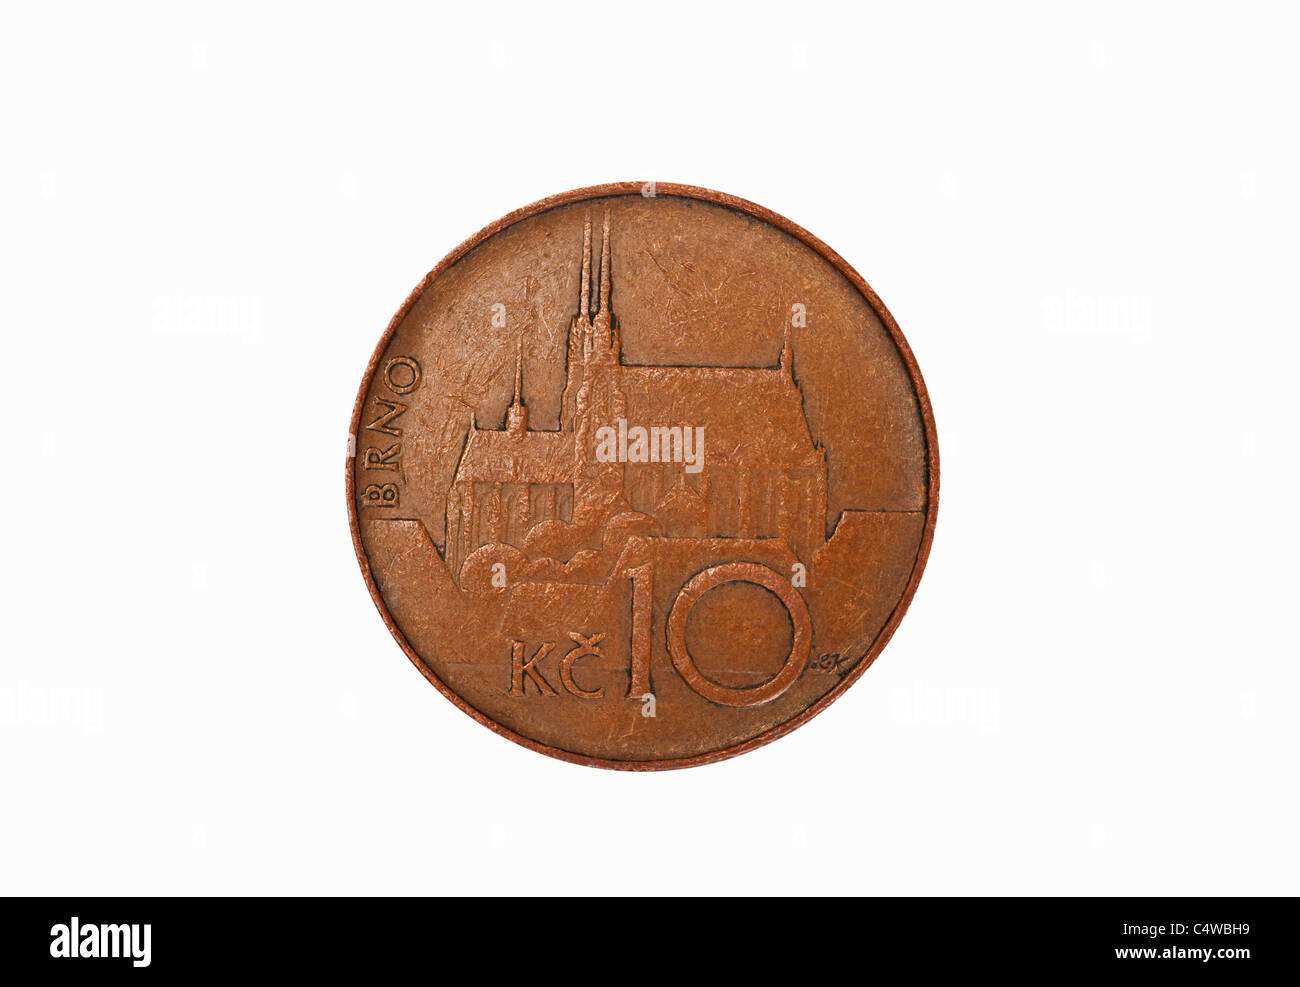 Detailansicht einer tschechischen 10 Kronen Münze | Detail photo of a czech 10 koruna coin Stock Photo